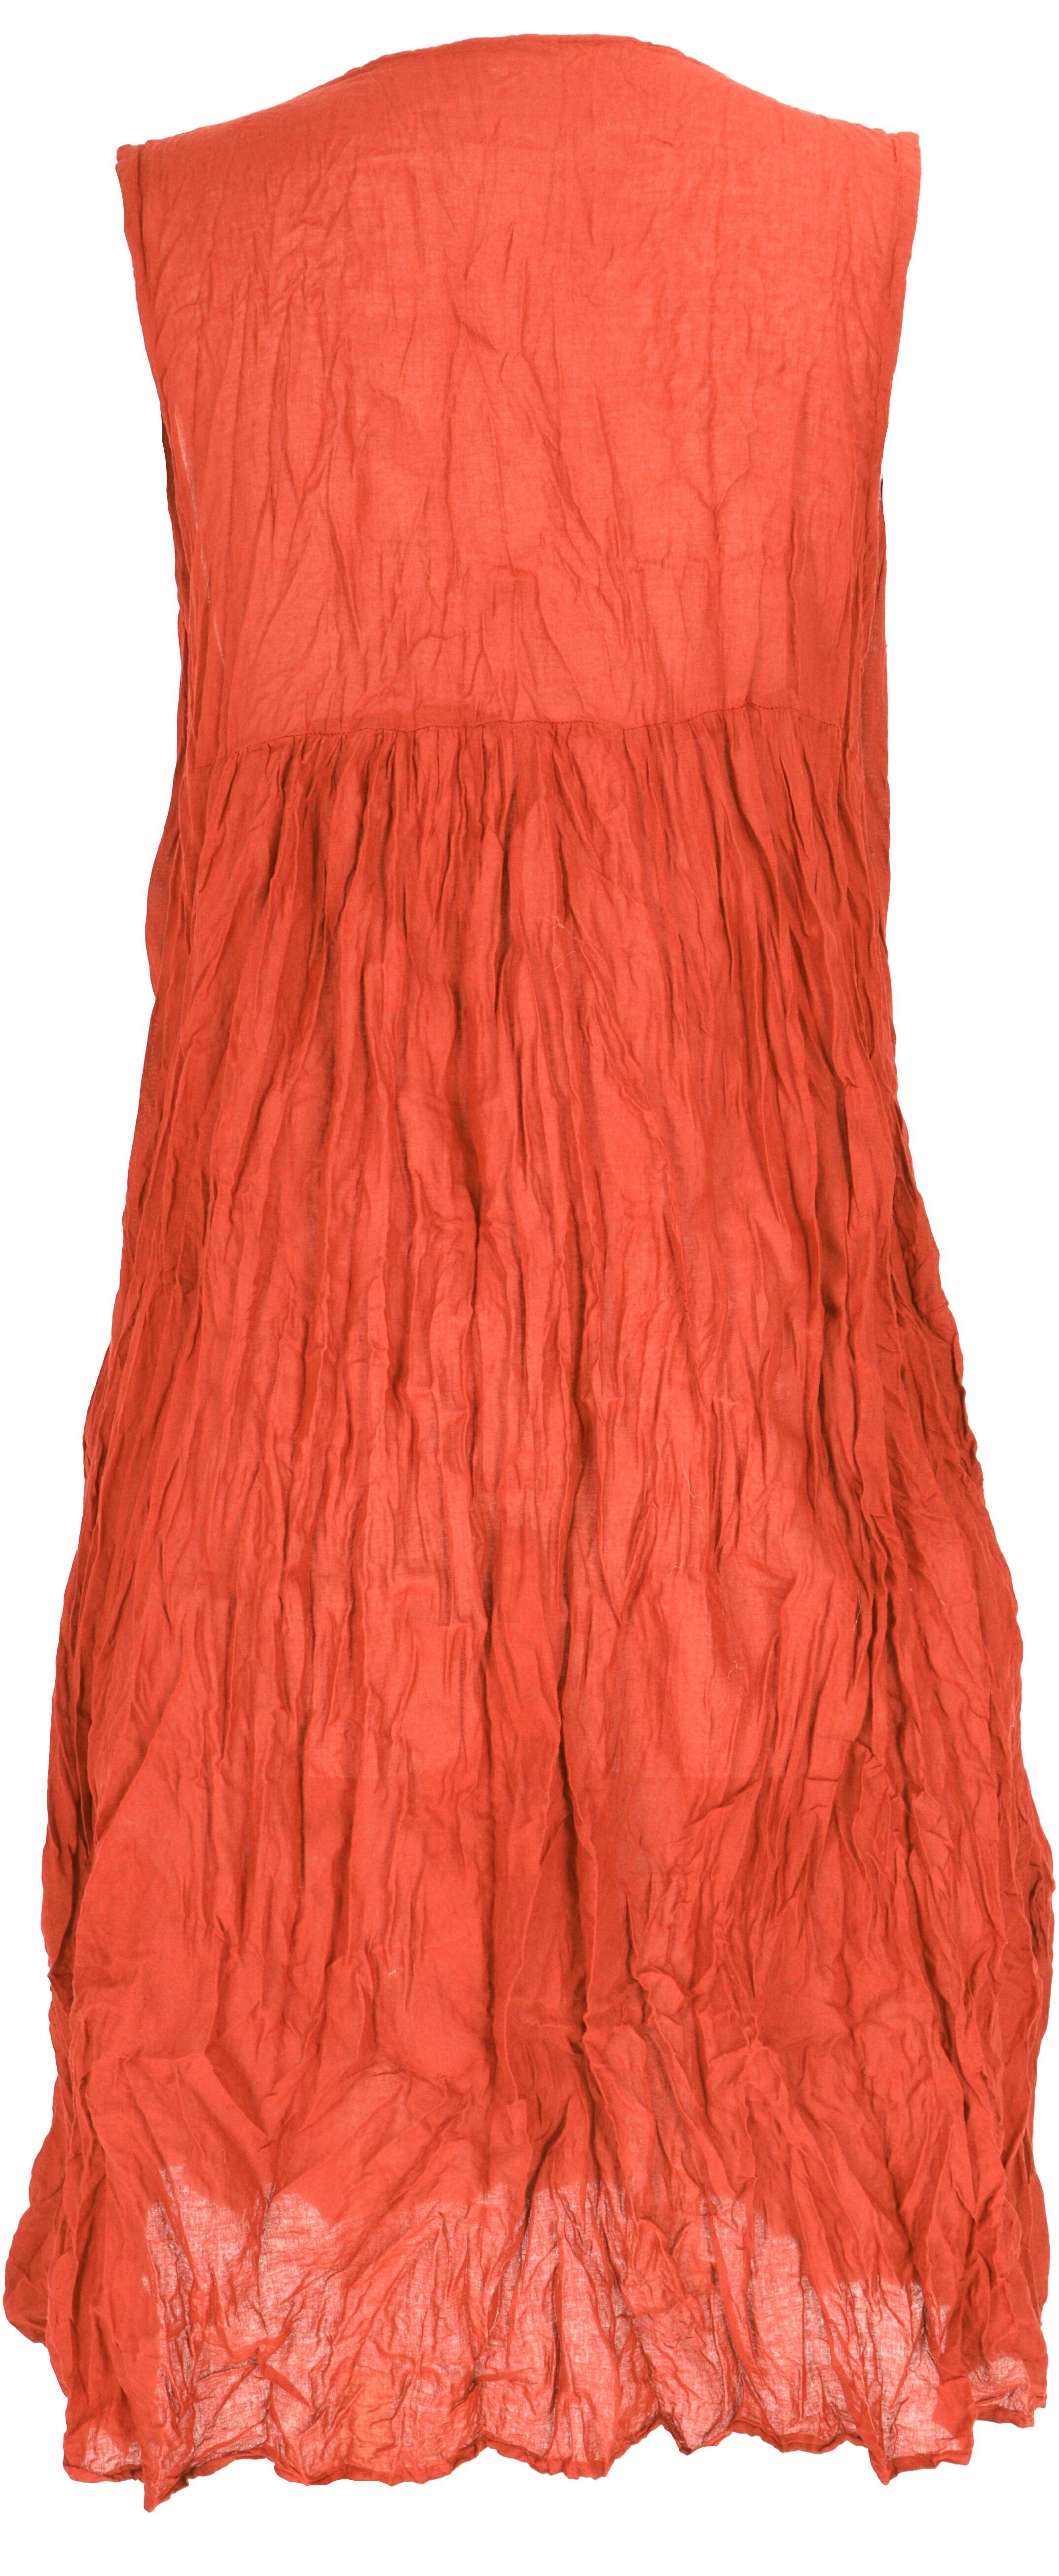 Guru-Shop im.. Sommerkleid Midikleid Bekleidung luftiges orange Krinkelkleid, Boho alternative